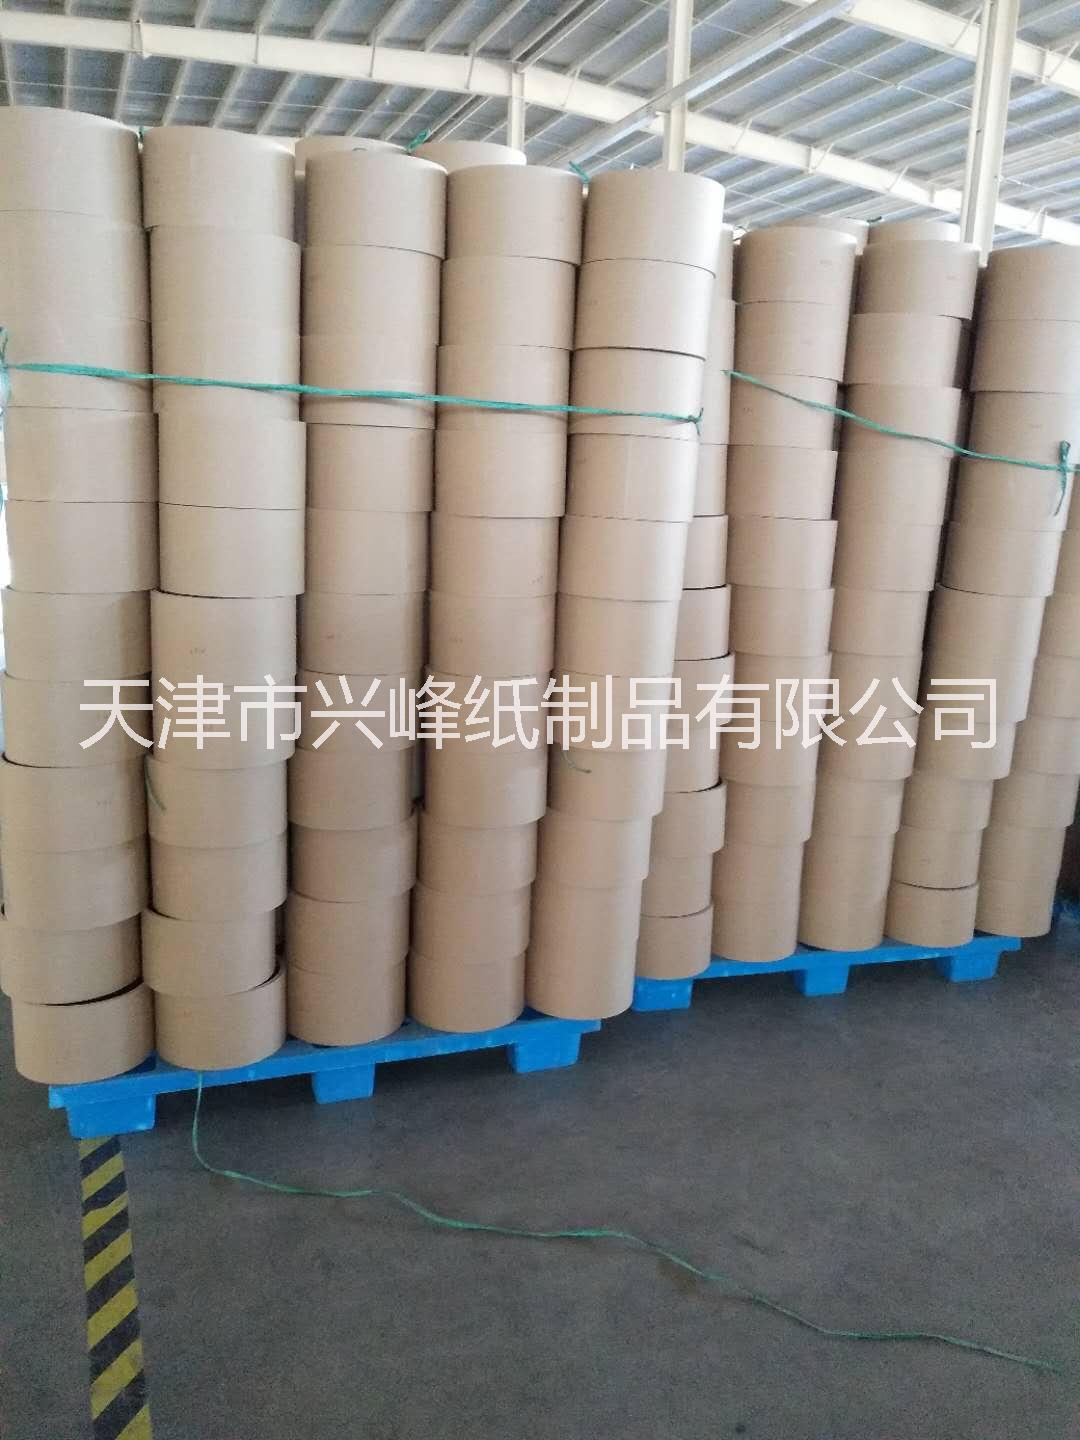 天津工业纸管定做 批发供应高品质天津工业纸管定做 批发供应高品质